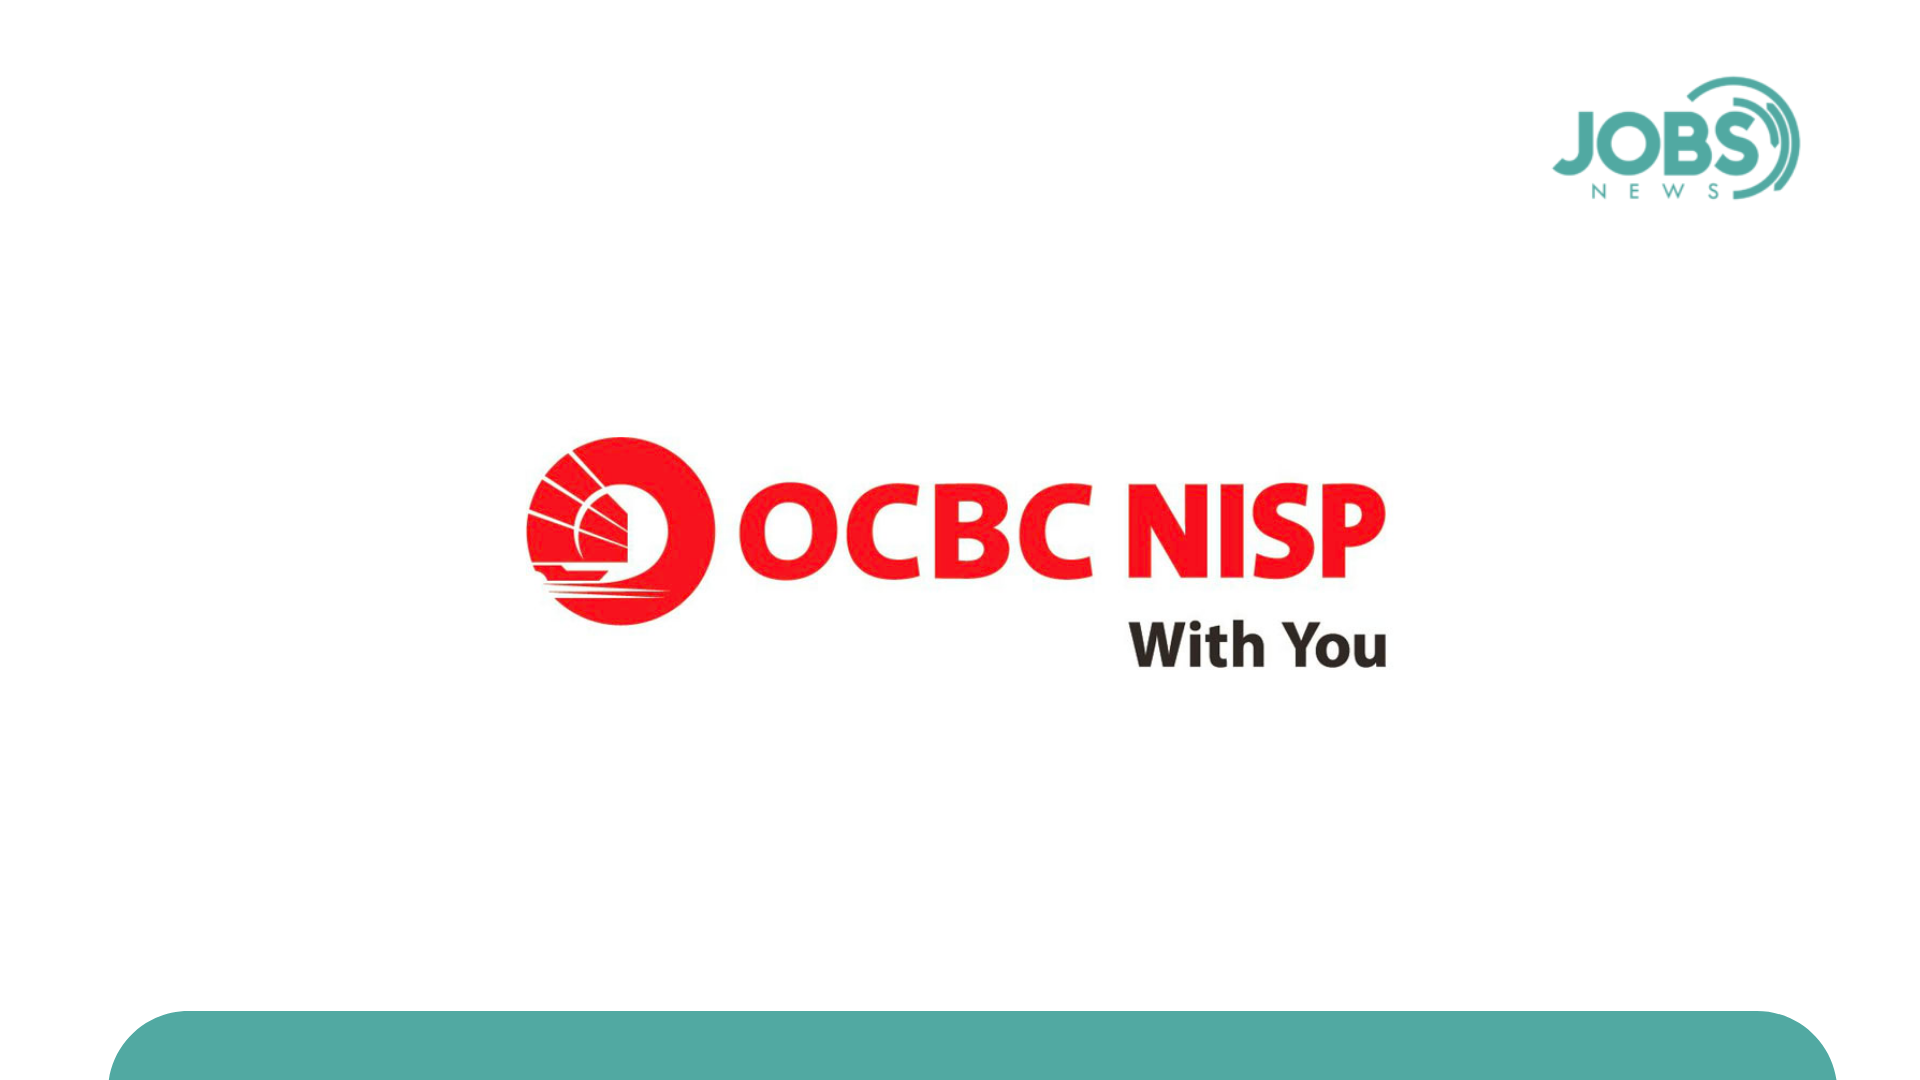 Lowongan Kerja Bank OCBC NISP Terbaru